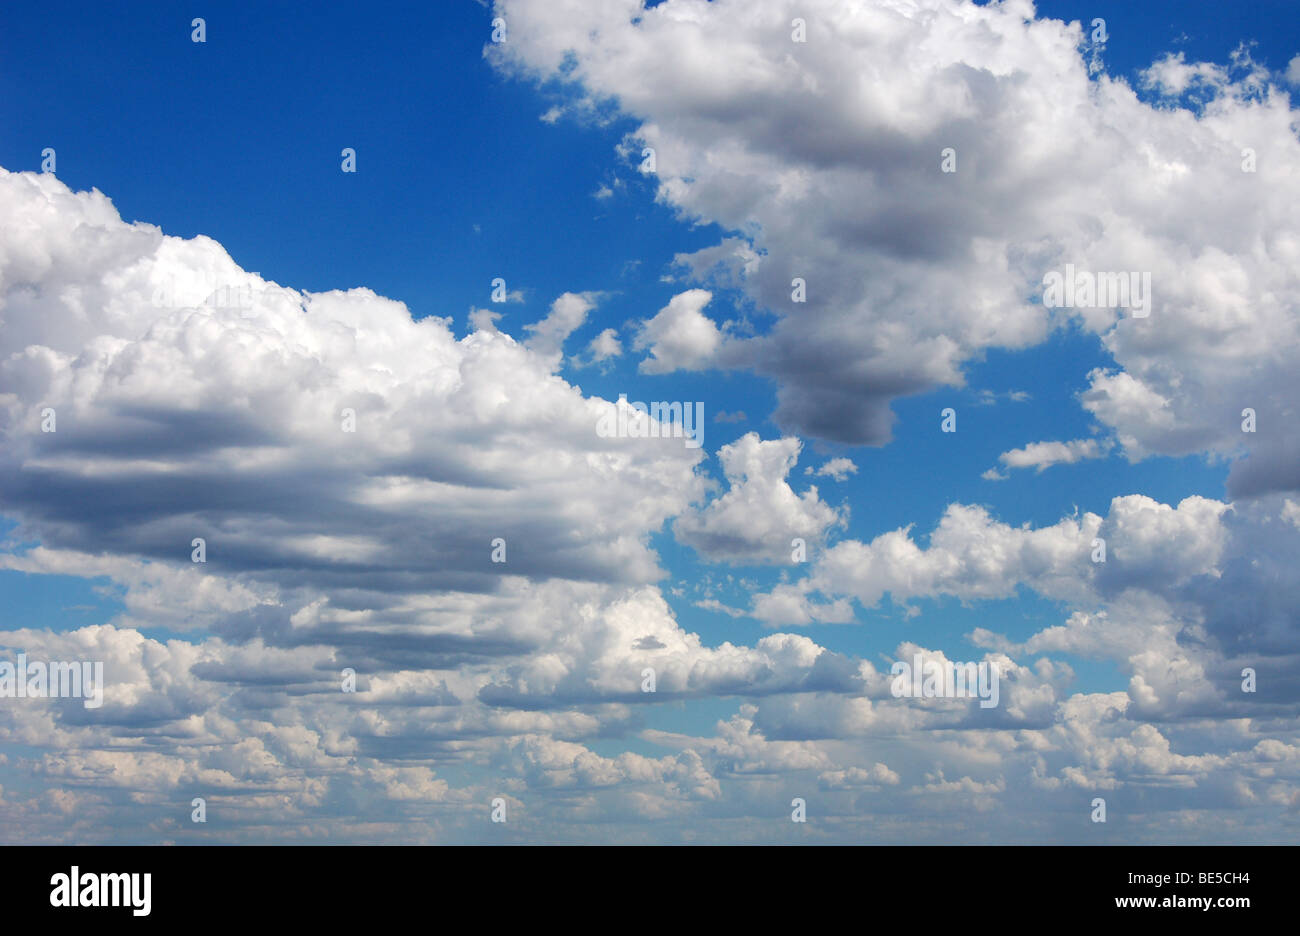 Ciel bleu avec des nuages dans sunshine day, photo panoramique Banque D'Images